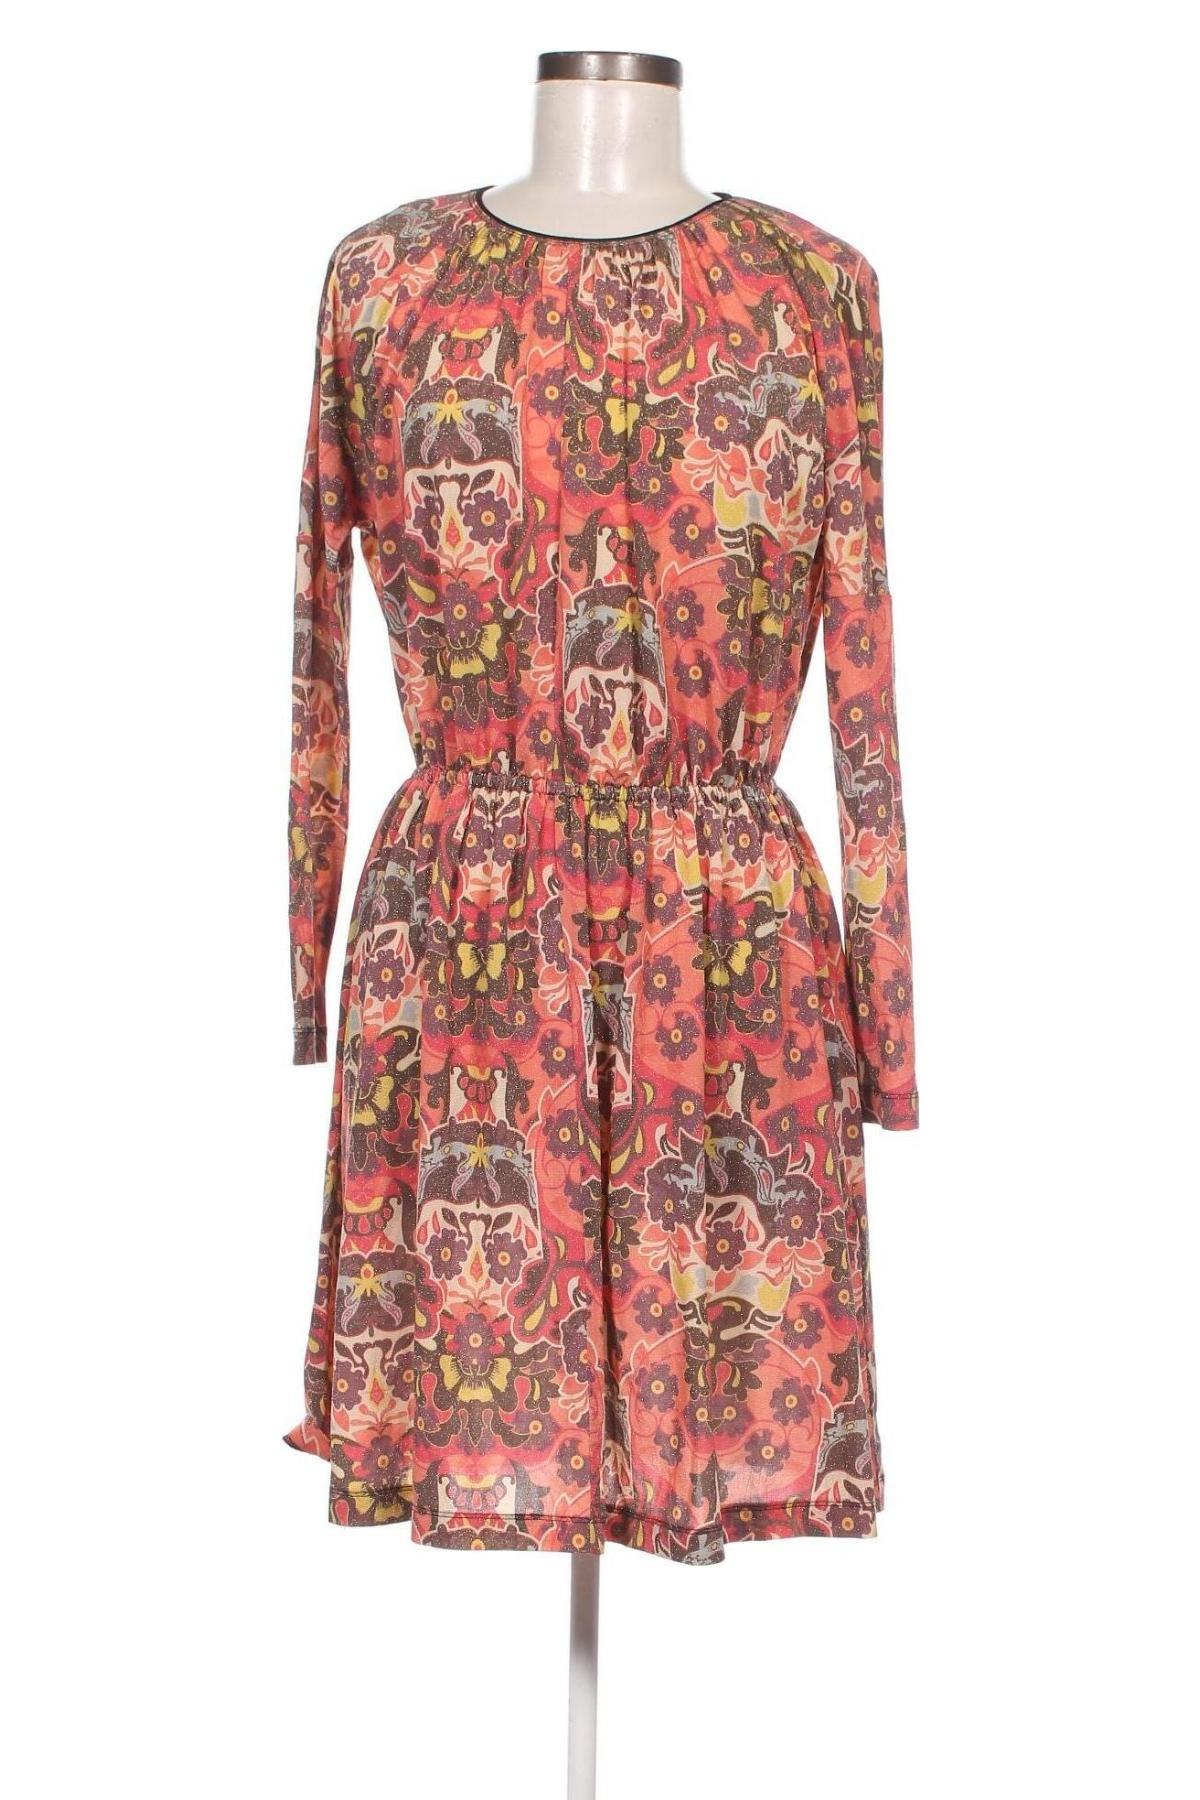 Φόρεμα M Missoni, Μέγεθος S, Χρώμα Πολύχρωμο, Τιμή 78,76 €